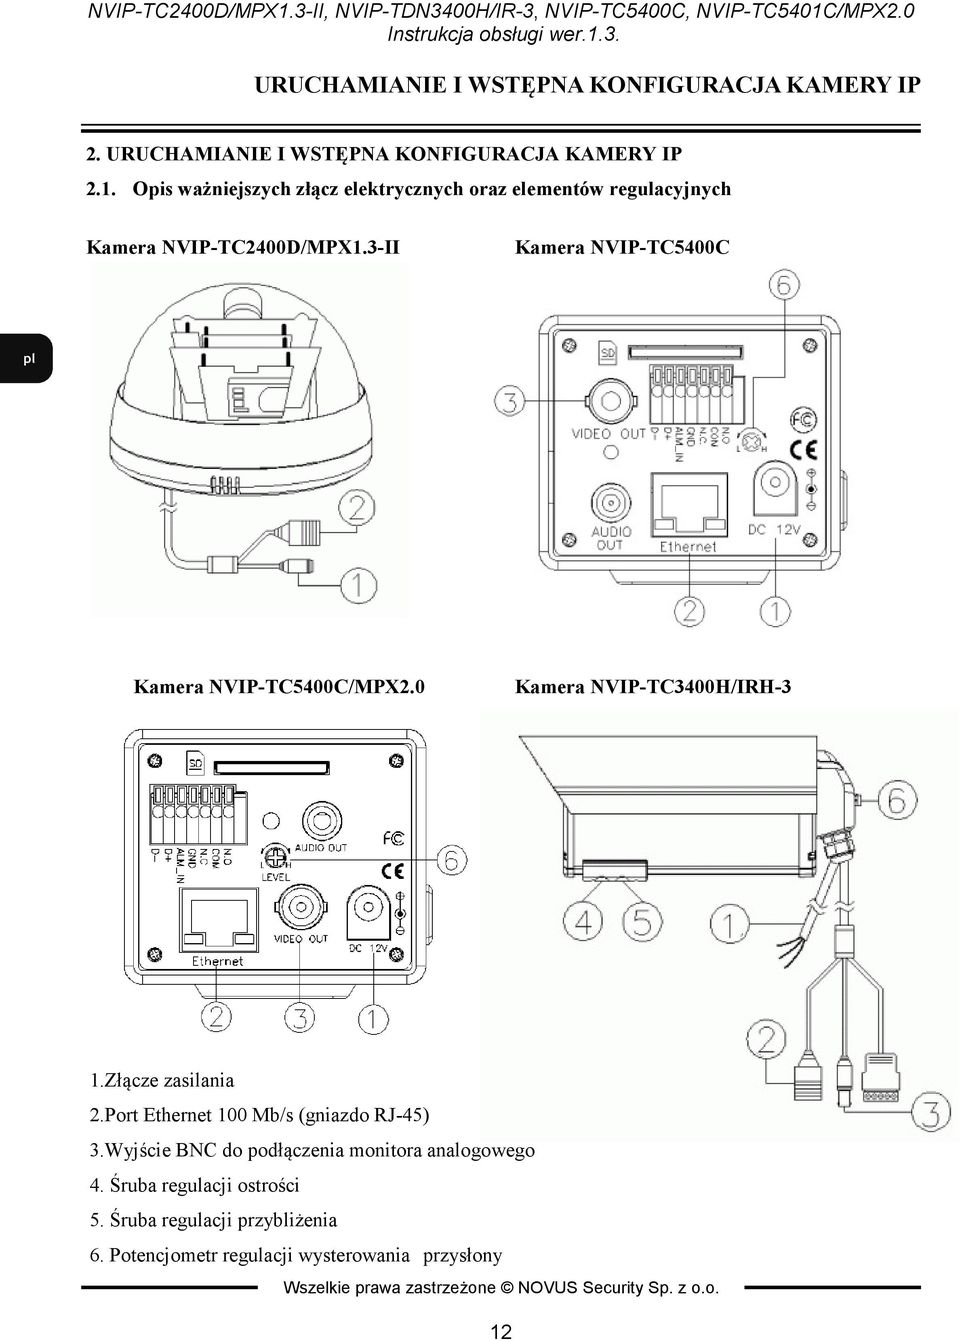 3-II Kamera VIP-TC5400C Kamera VIP-TC5400C/MPX2.0 Kamera VIP-TC3400H/IRH-3 1.Złącze zasilania 2.